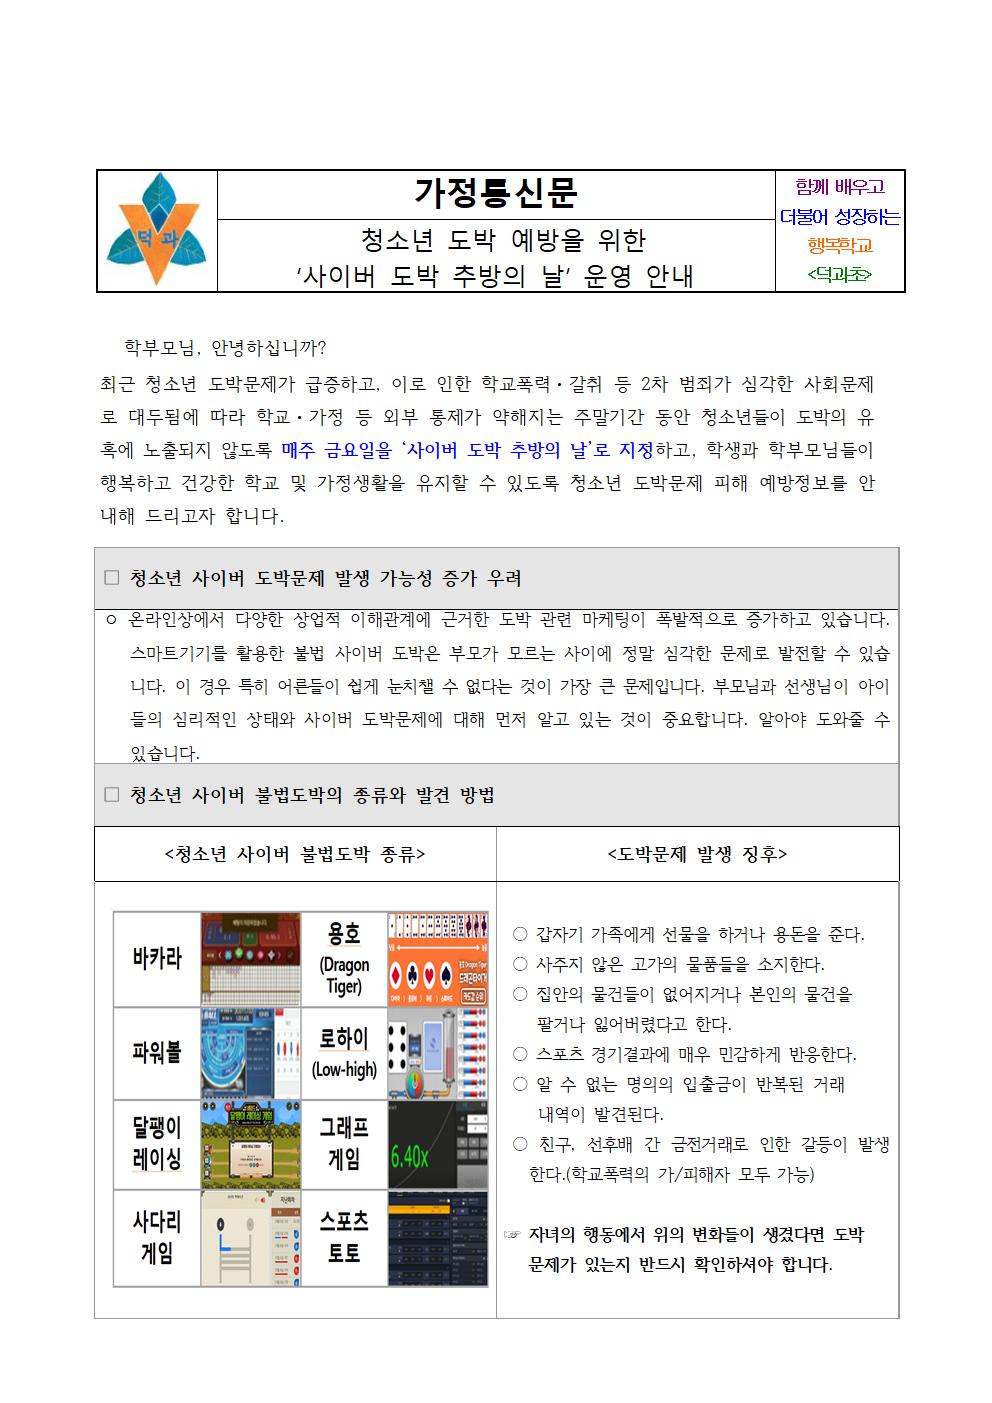 ‘사이버 도박 추방의 날’ 운영 안내 가정통신문001